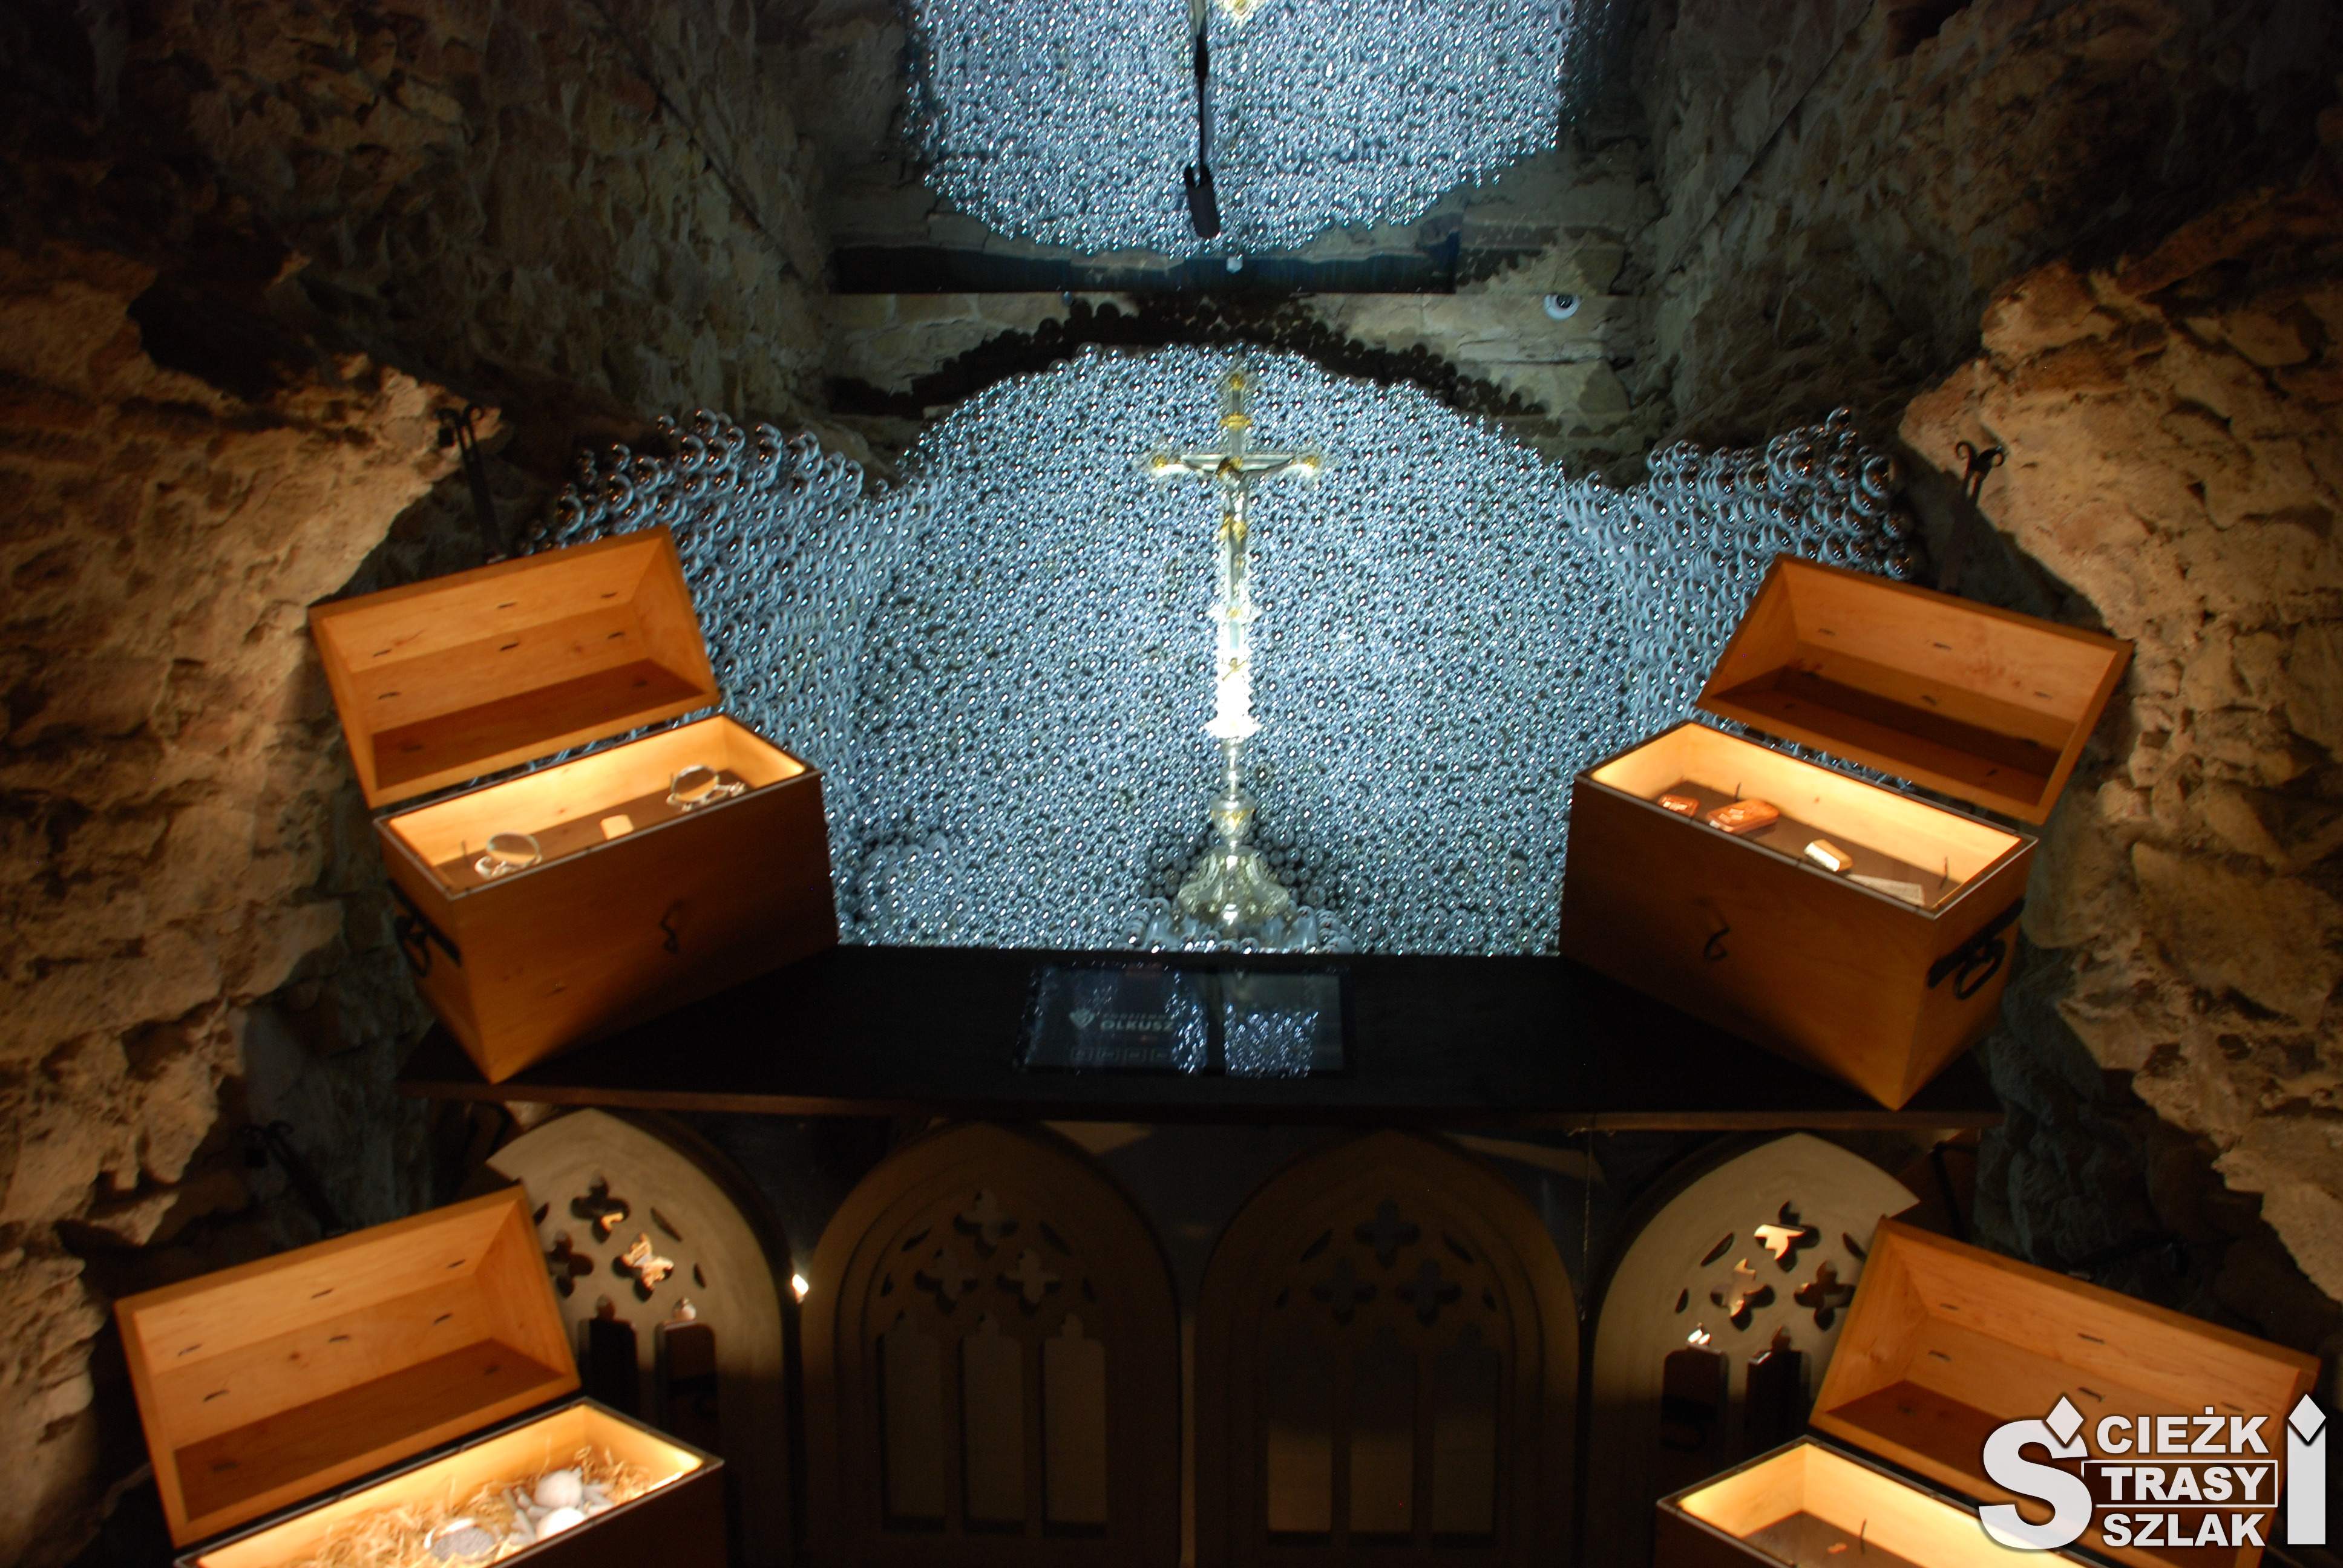 Srebrny Krzyż Gwarków Olkuskich na tle srebrnych kulek i skrzyń ze srebrem w podziemiach olkuskiego muzeum